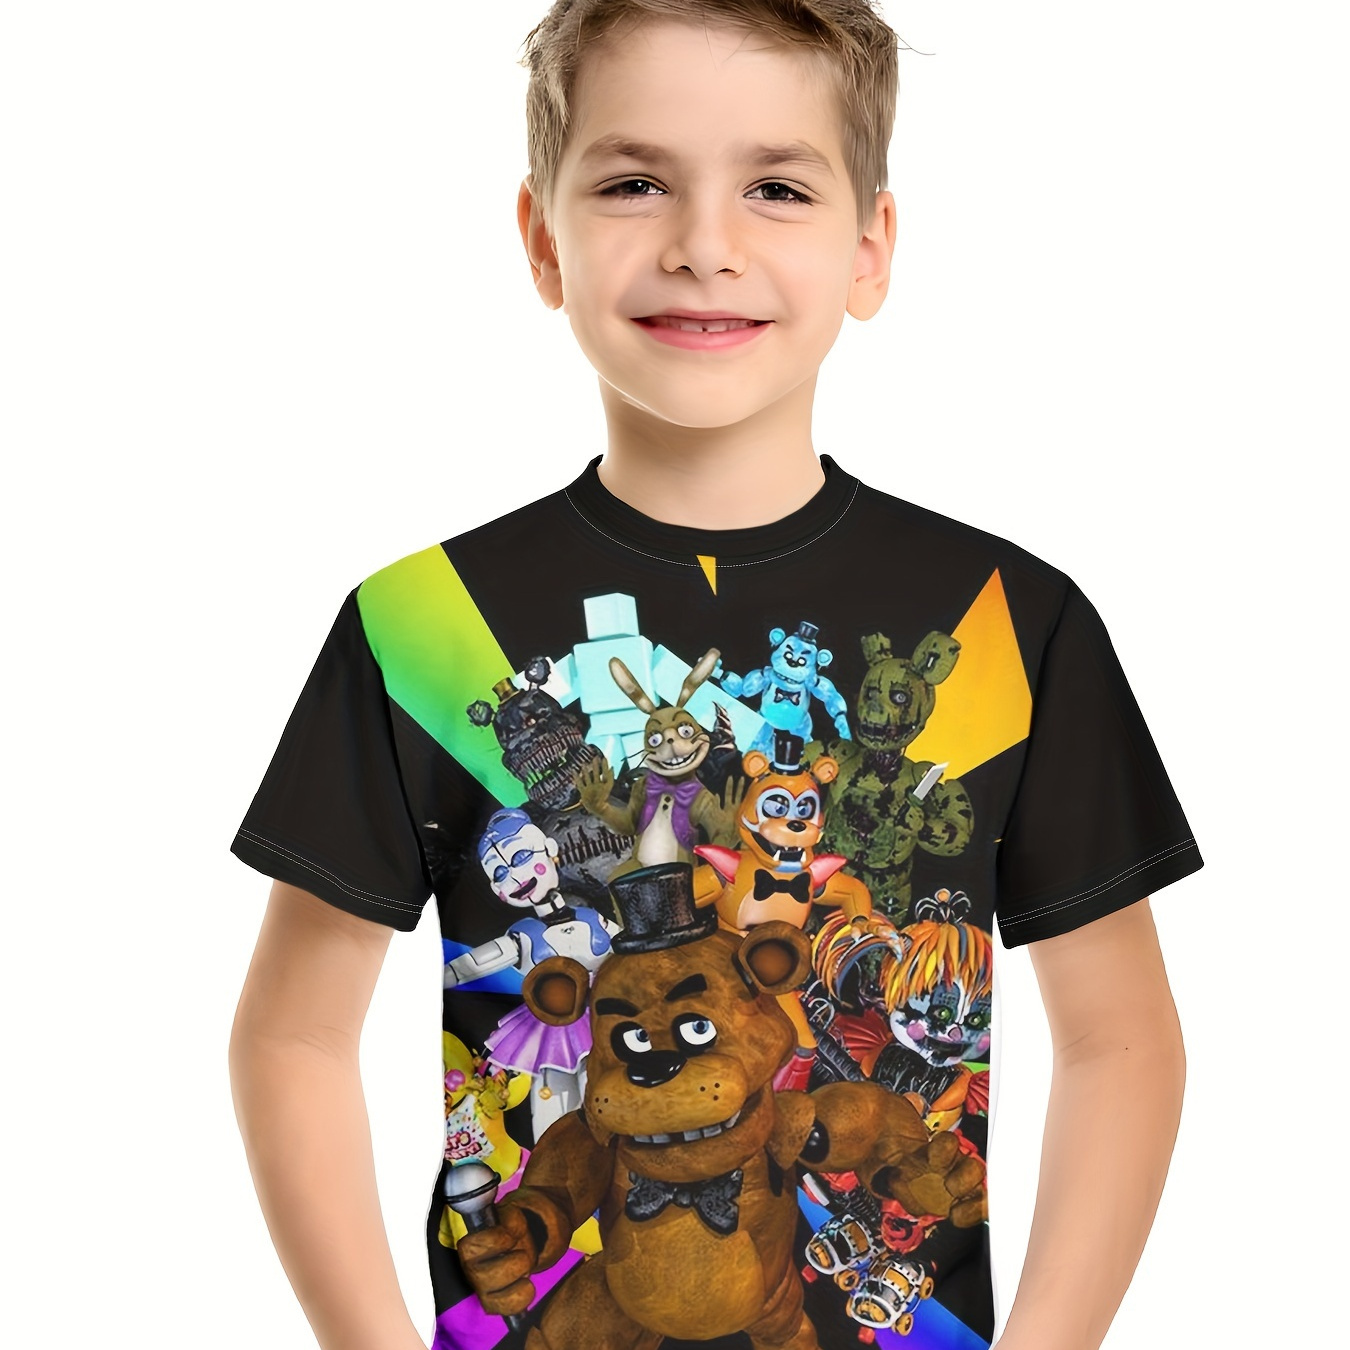 

T-shirt pour garçon avec impression d'un ours robotique en 3D, idéal pour l'été et les activités en plein air